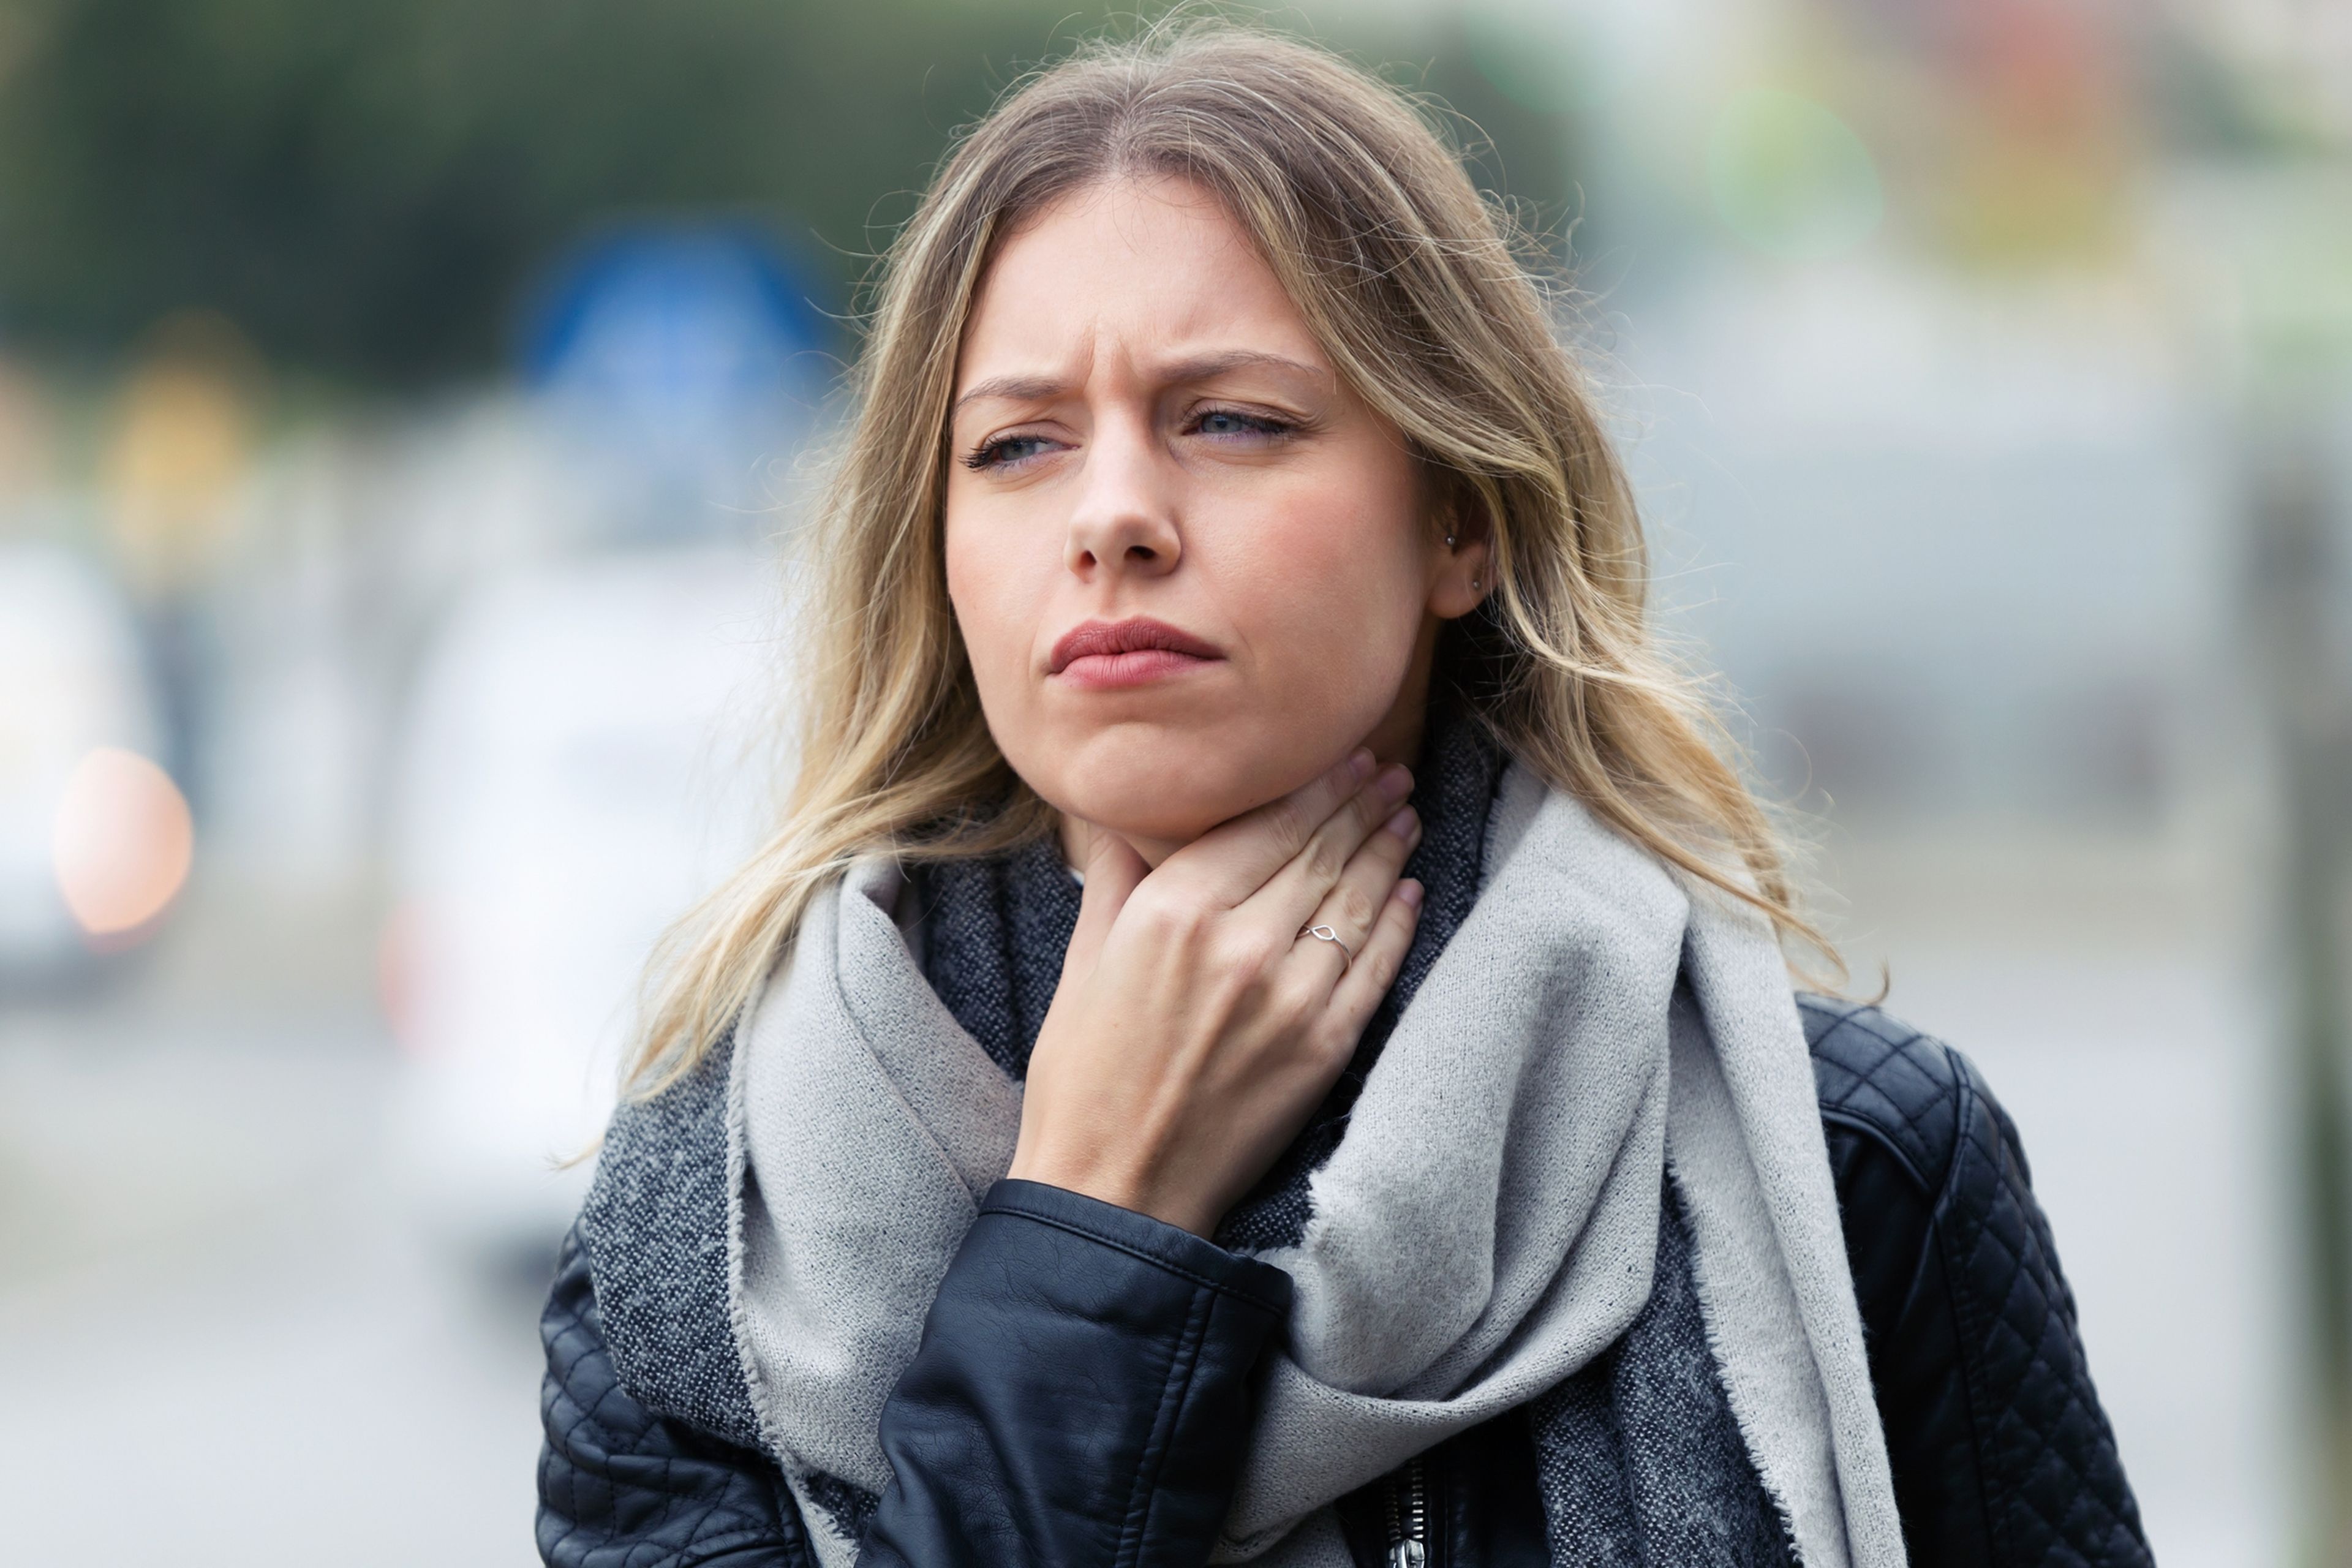 Trucos caseros muy simples para combatir el resfriado y el dolor de garganta